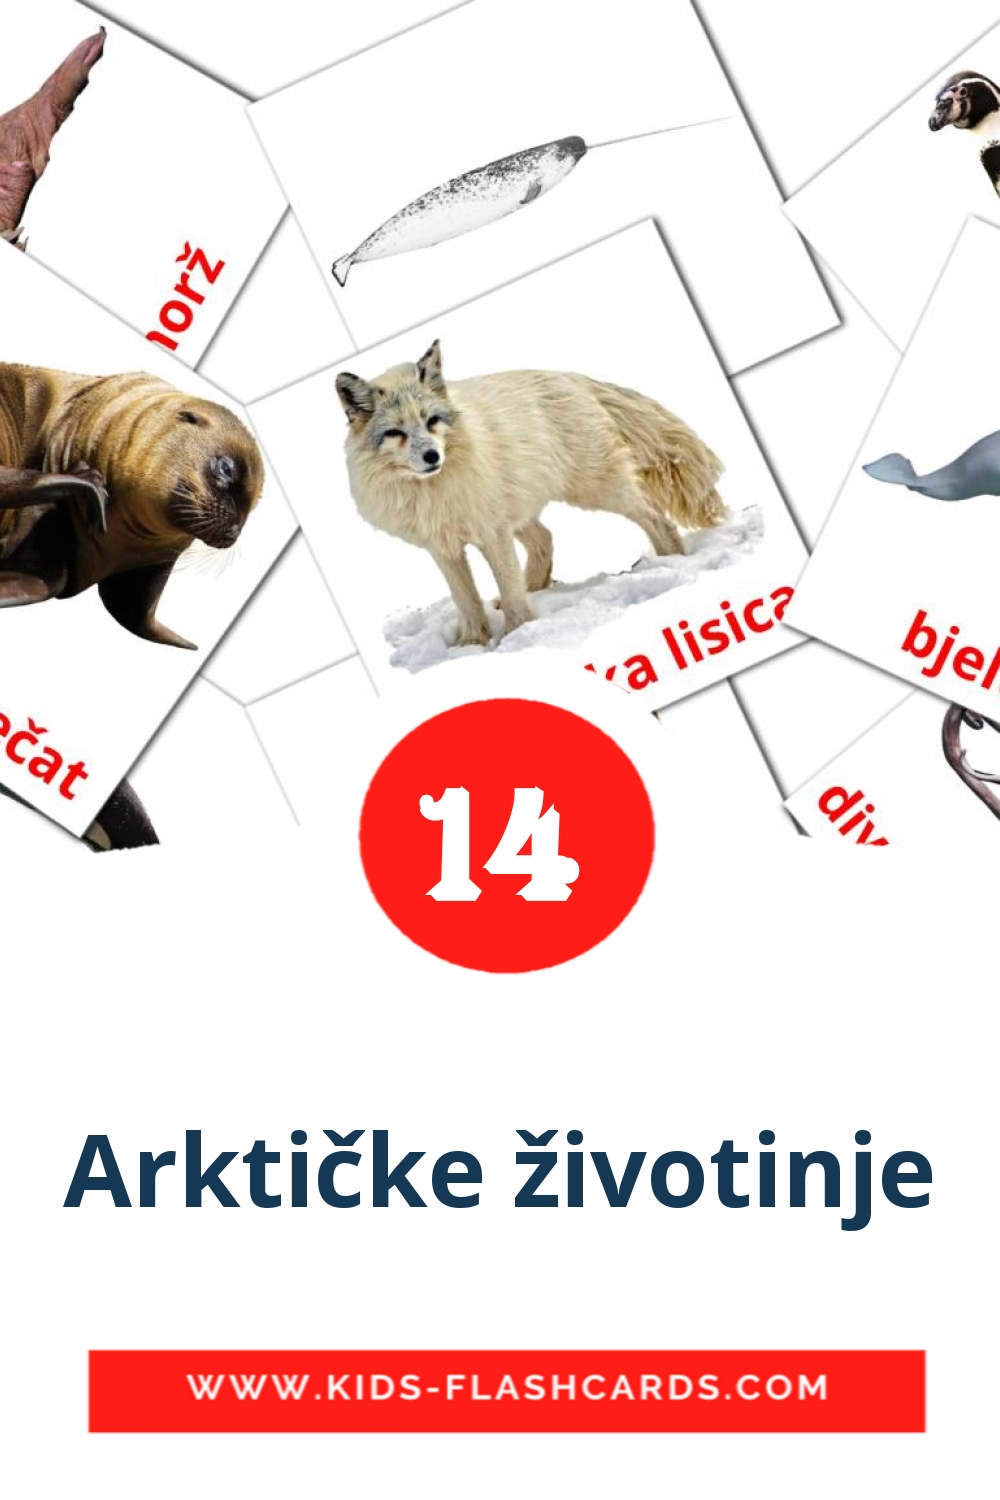 14 Arktičke životinje fotokaarten voor kleuters in het kroatisch